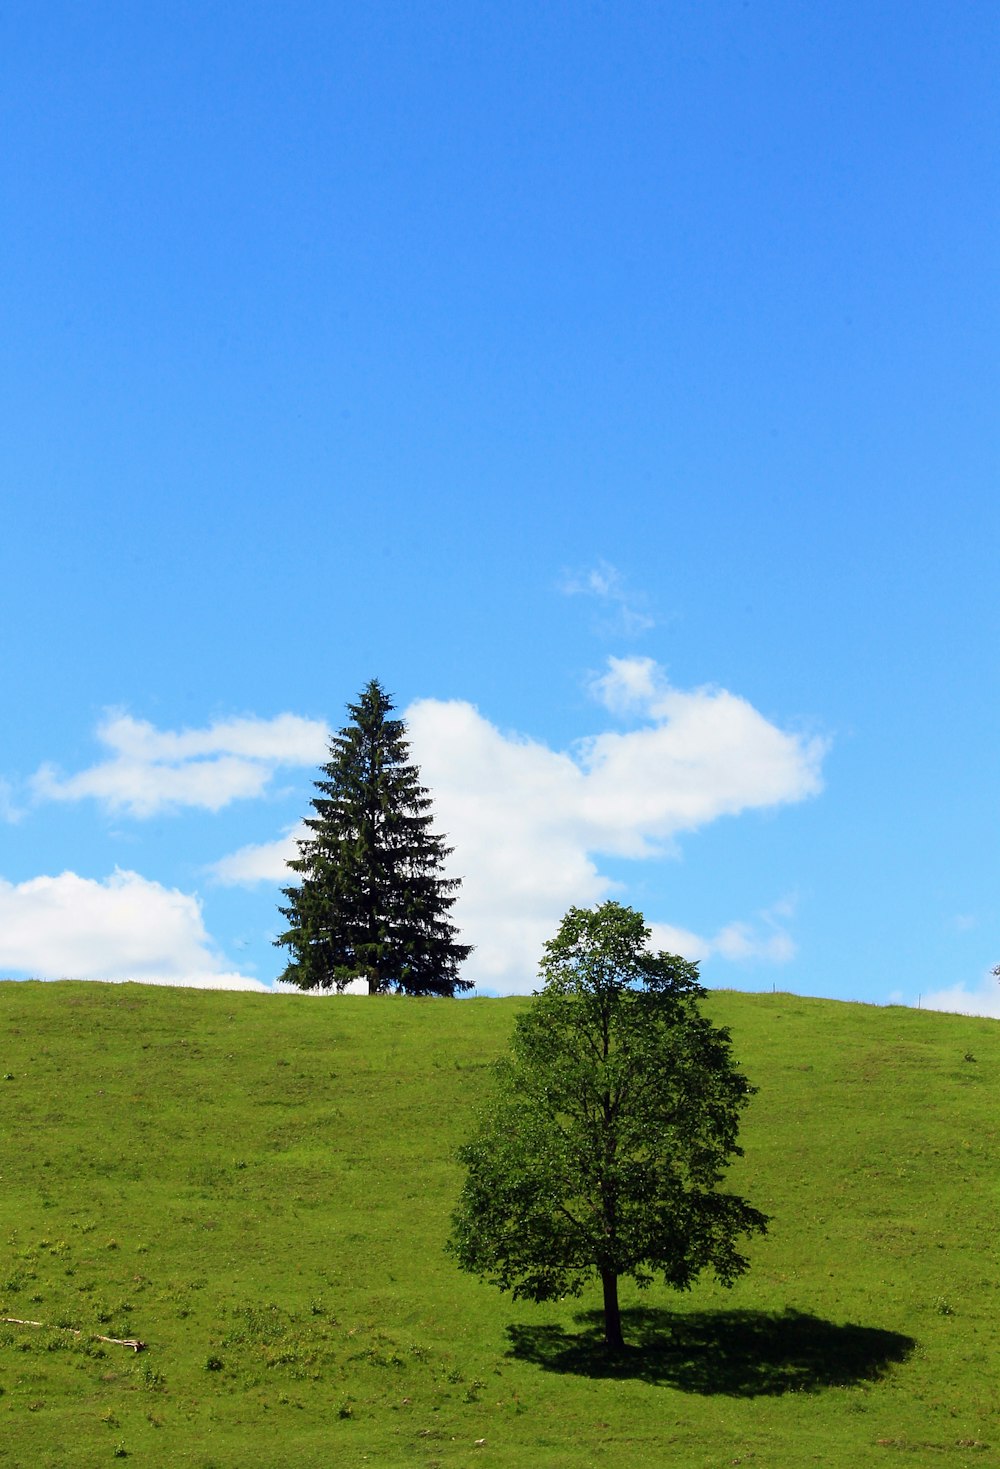 Un arbre solitaire sur une colline herbeuse sous un ciel bleu